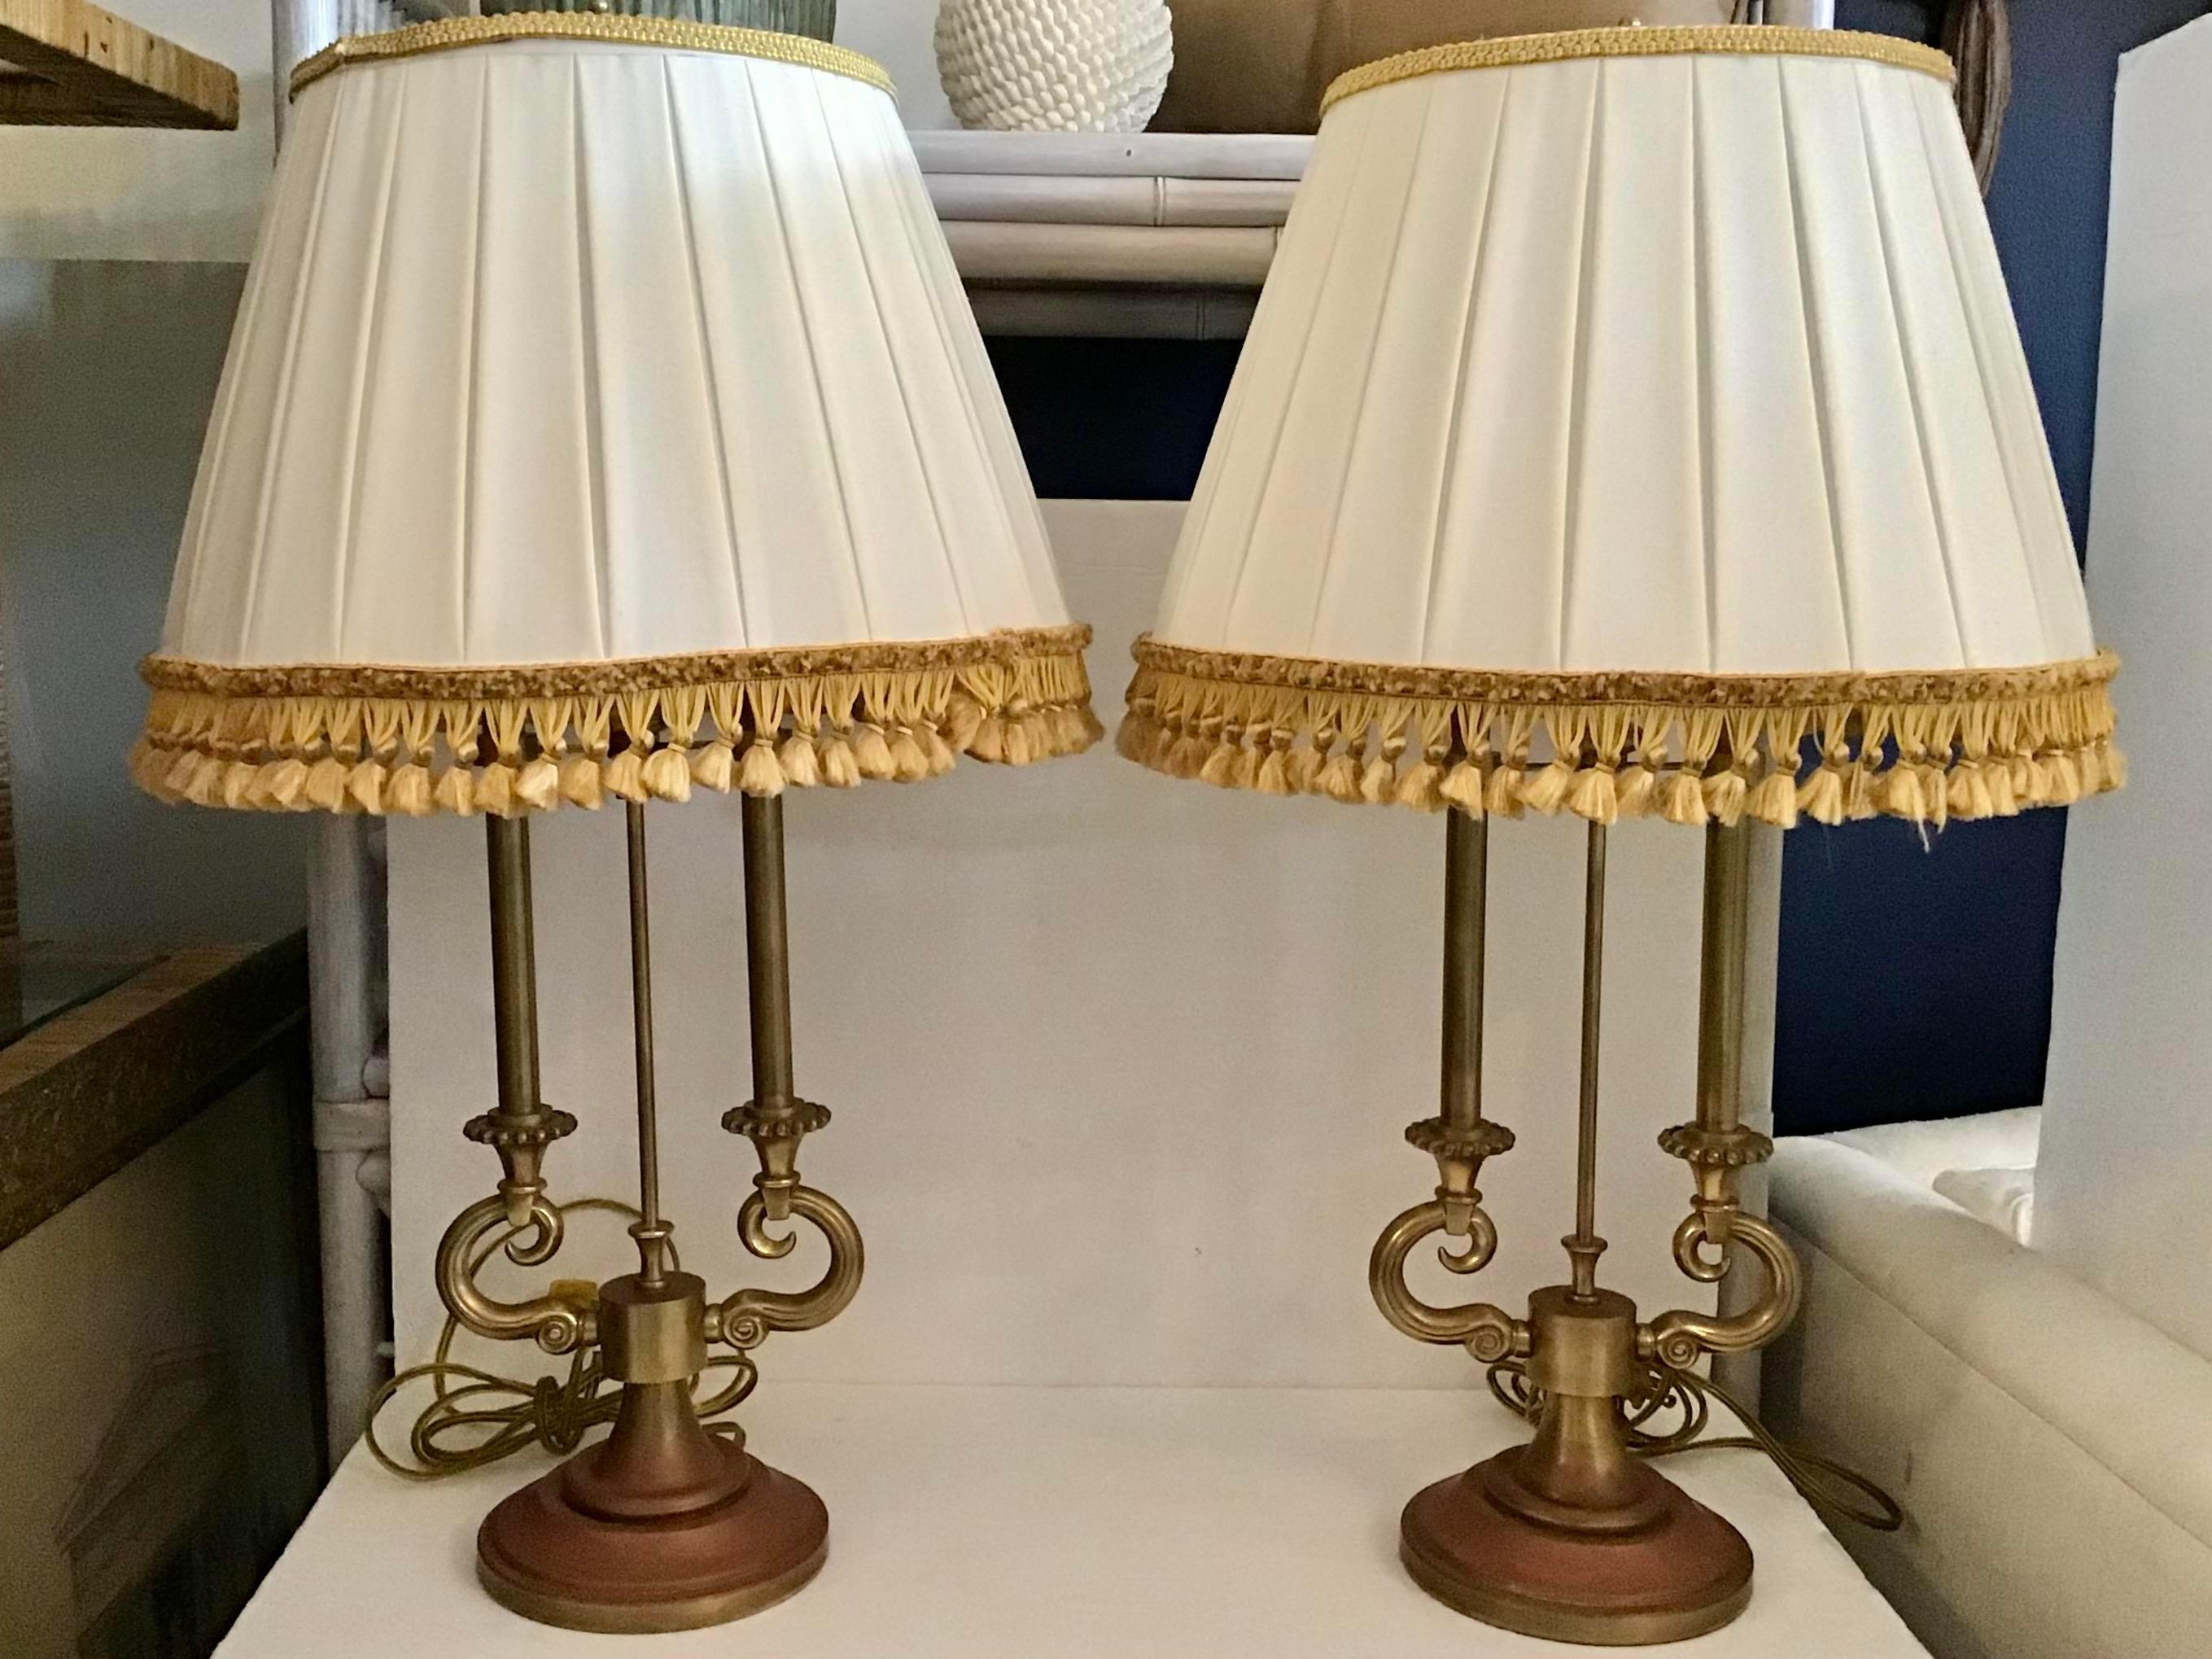 Paire originale de lampes de table en laiton Stiffel avec abat-jour Jansen à frange dorée. Ces magnifiques lampes Stiffel d'origine sont d'un laiton chaud et usé. Remarquez l'usure du temps sur les socles qui ajoutent une véritable colère à vos